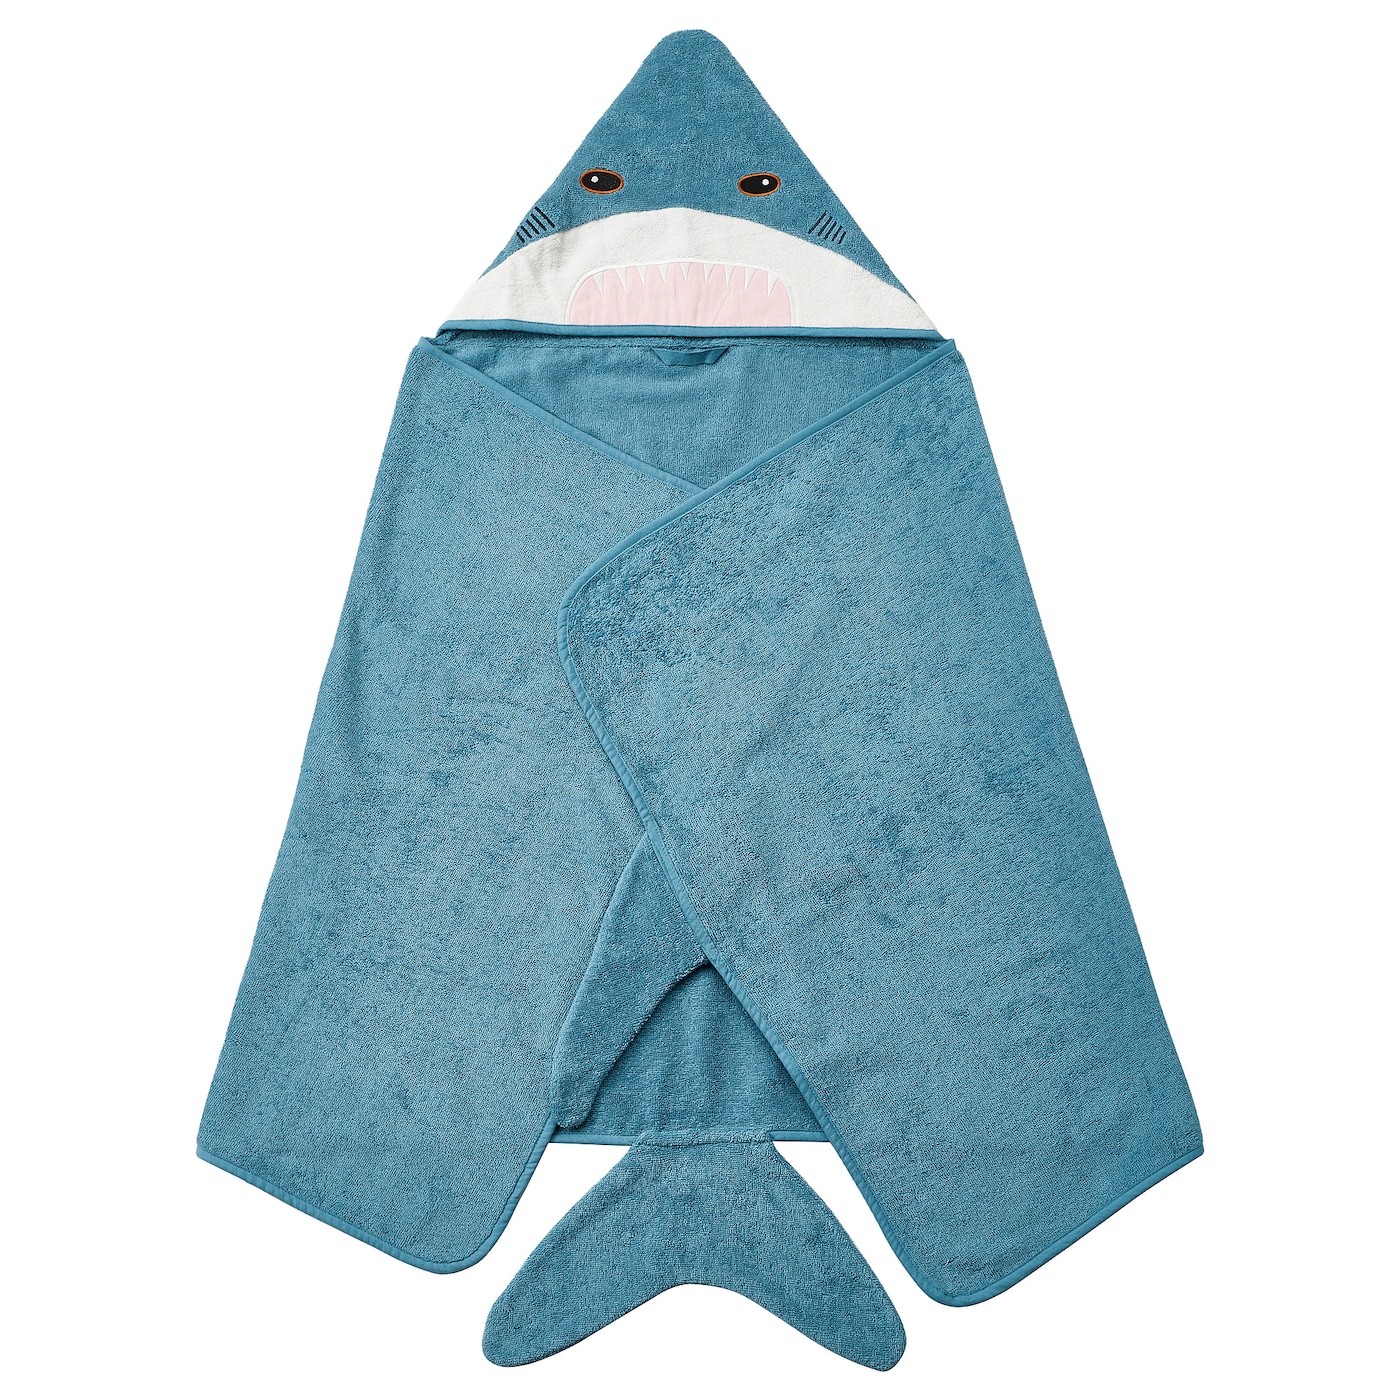 BLÅVINGAD БЛОВИНГАД Полотенце с капюшоном, в форме акулы/серо-голубой, 70x140 см IKEA полотенца babybunny полотенце детское махровое с капюшоном кошечка m 125х65 см